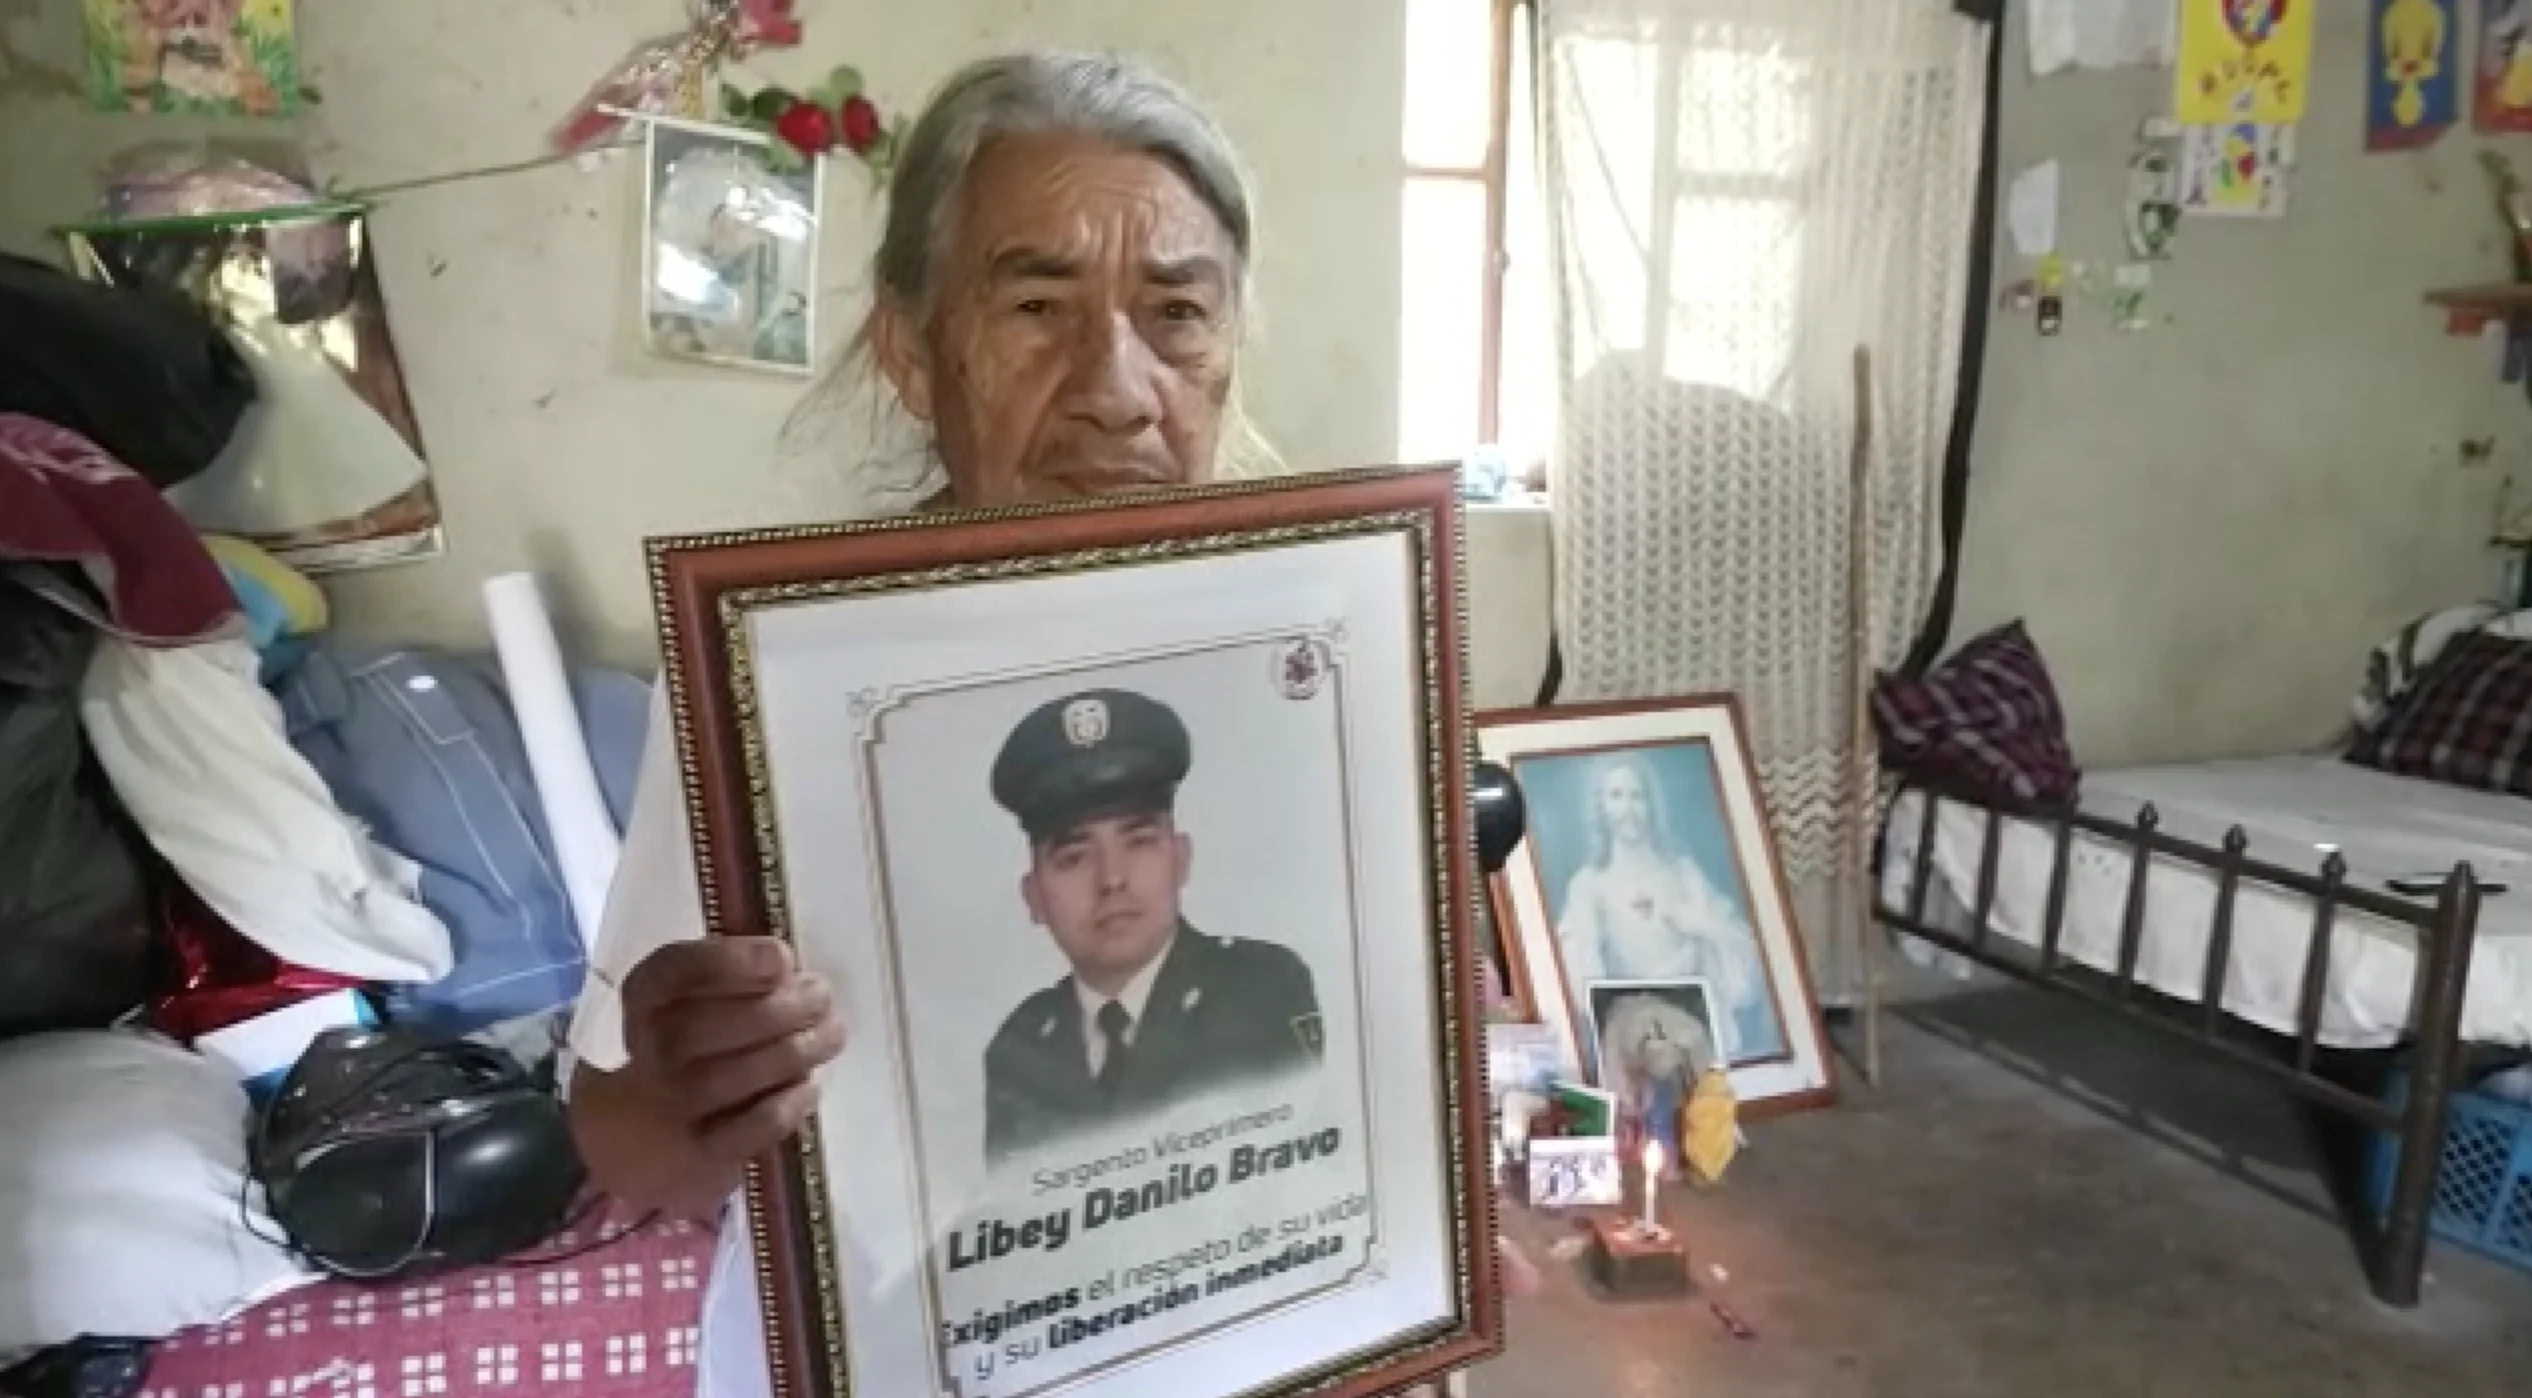 Madre del sargento Libey Danilo Bravo pide su liberación  